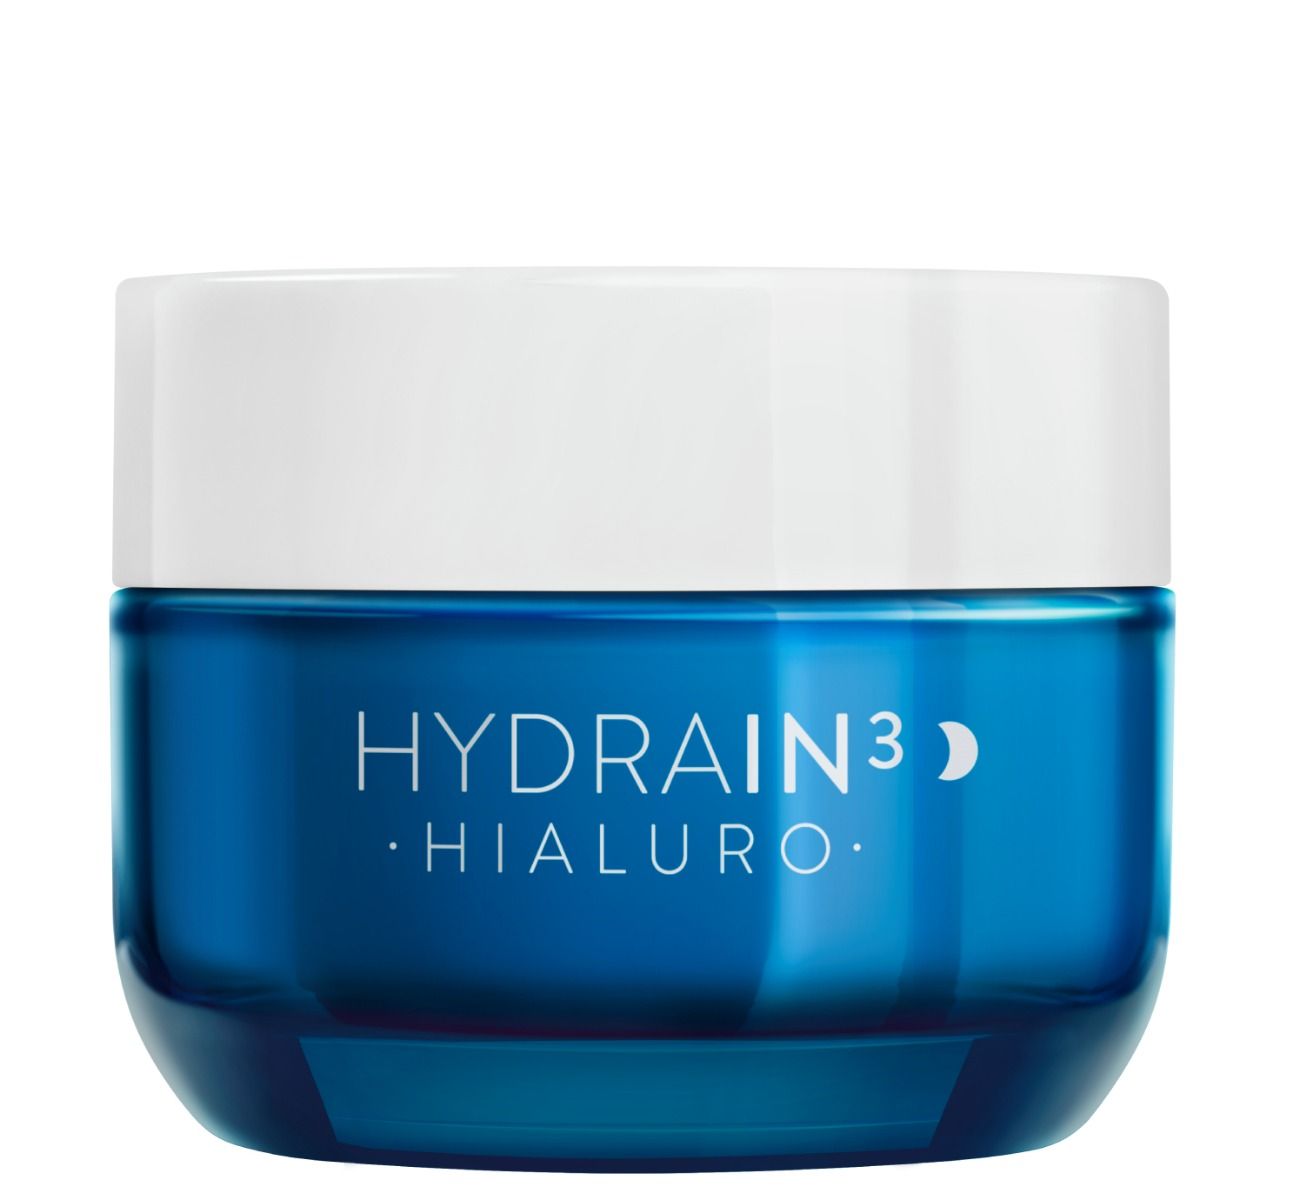 Dermedic Hydrain3 Hialuro крем для лица на ночь, 50 ml dermedic hydrain3 hialuro hialuro hydrating serum